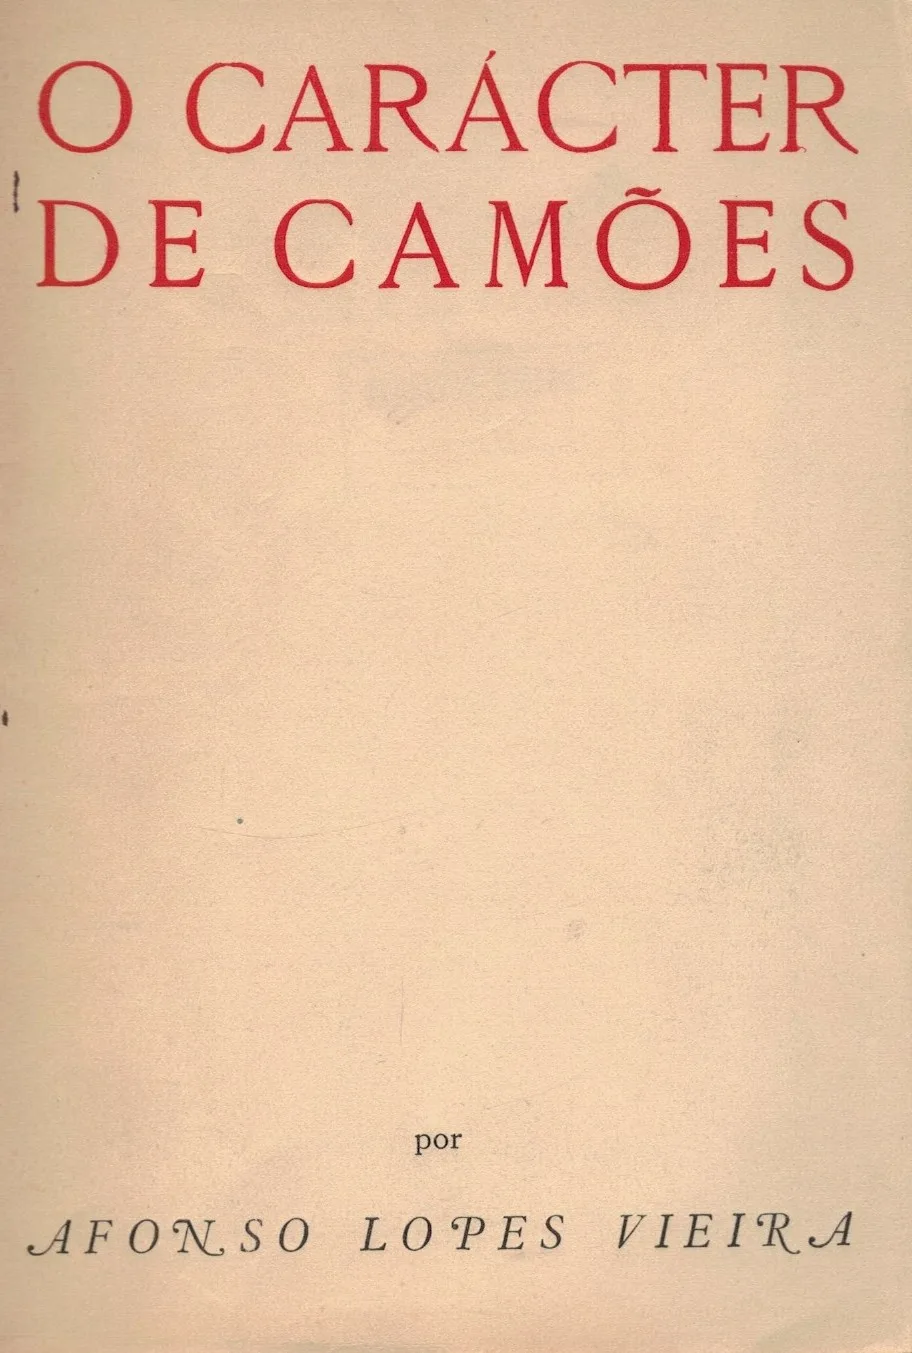 O Carácter de Camões de Afonso Lopes Vieira